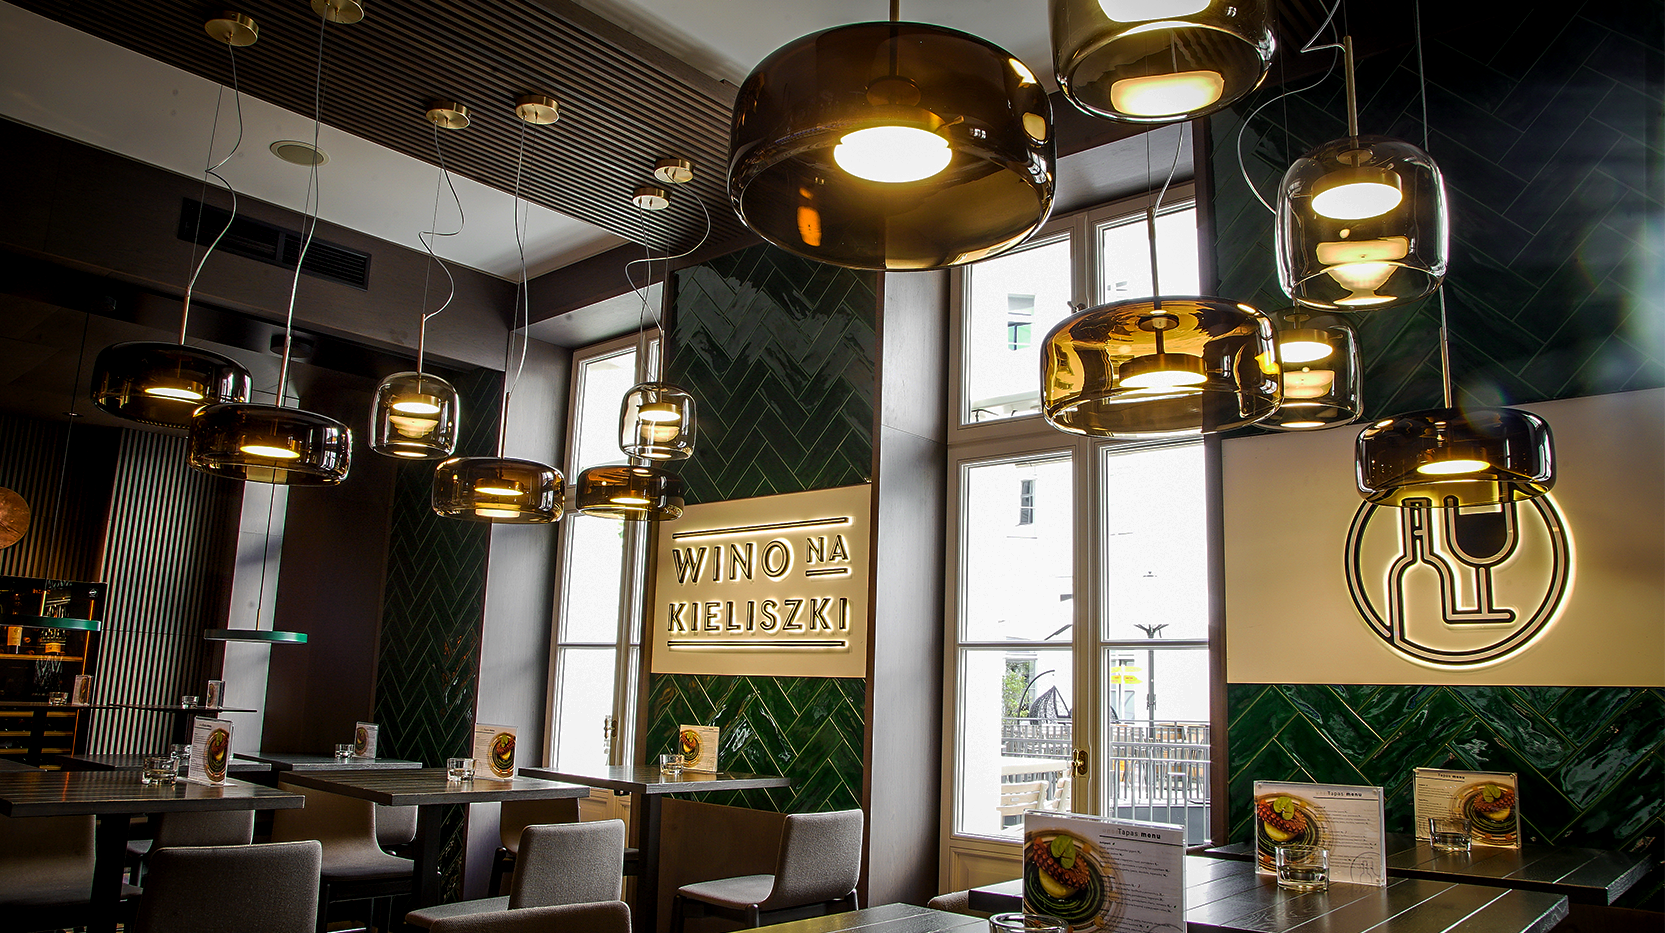 Wino na Kieliszki自助式酒吧空间设计